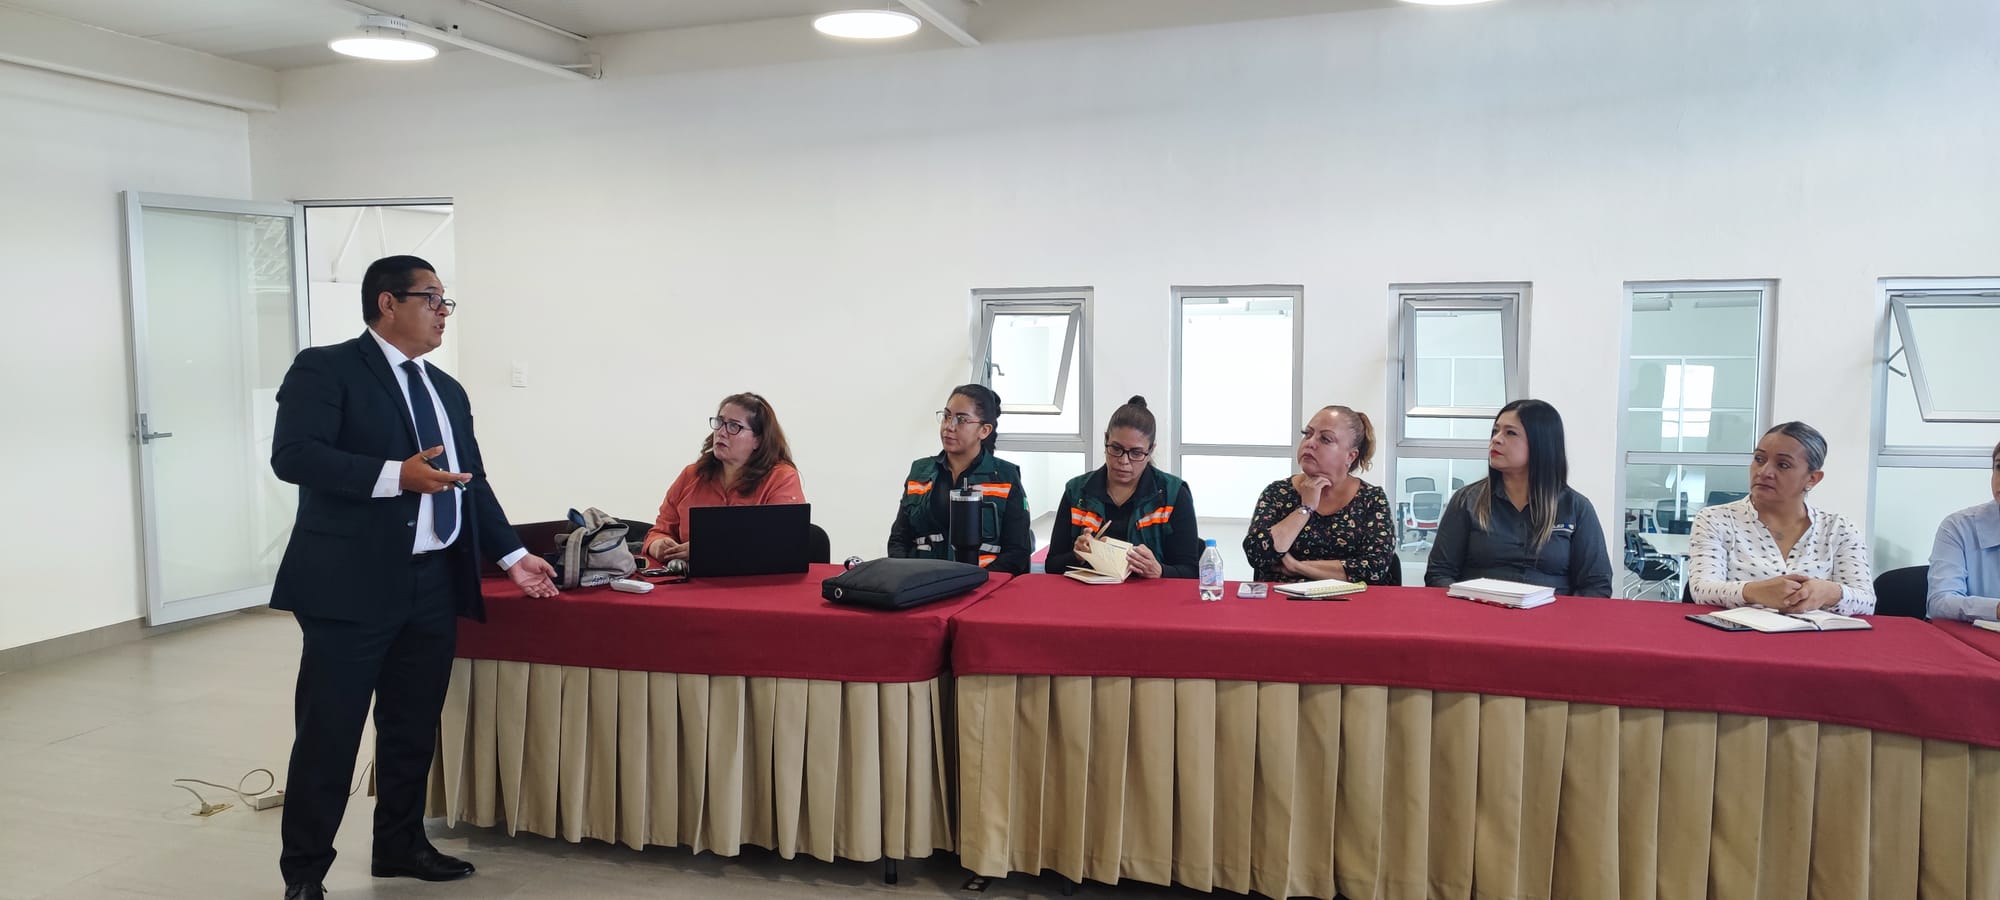 El Comité de Mujeres Empresarias realiza curso de CFDI 4.0 en Clusmin